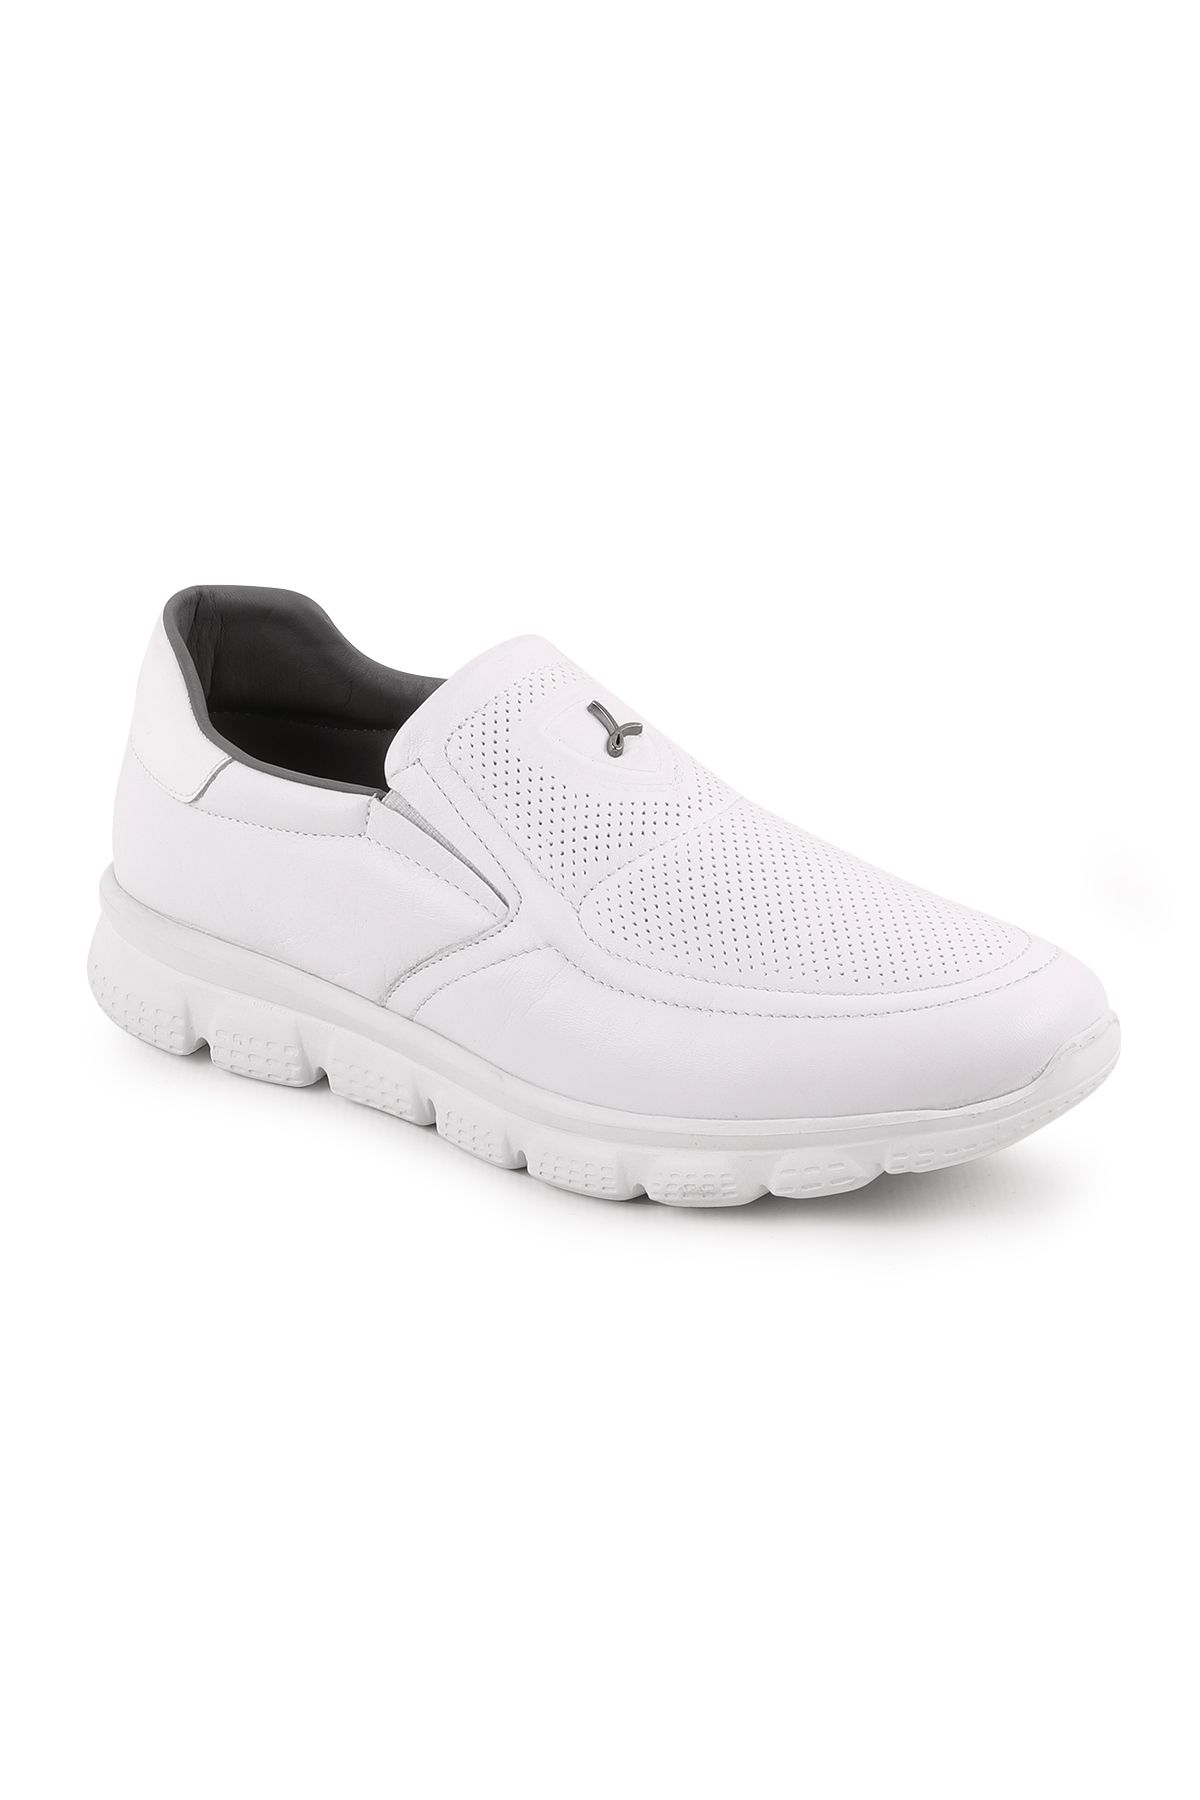 Libero L5079 Casual Erkek Ayakkabı Beyaz